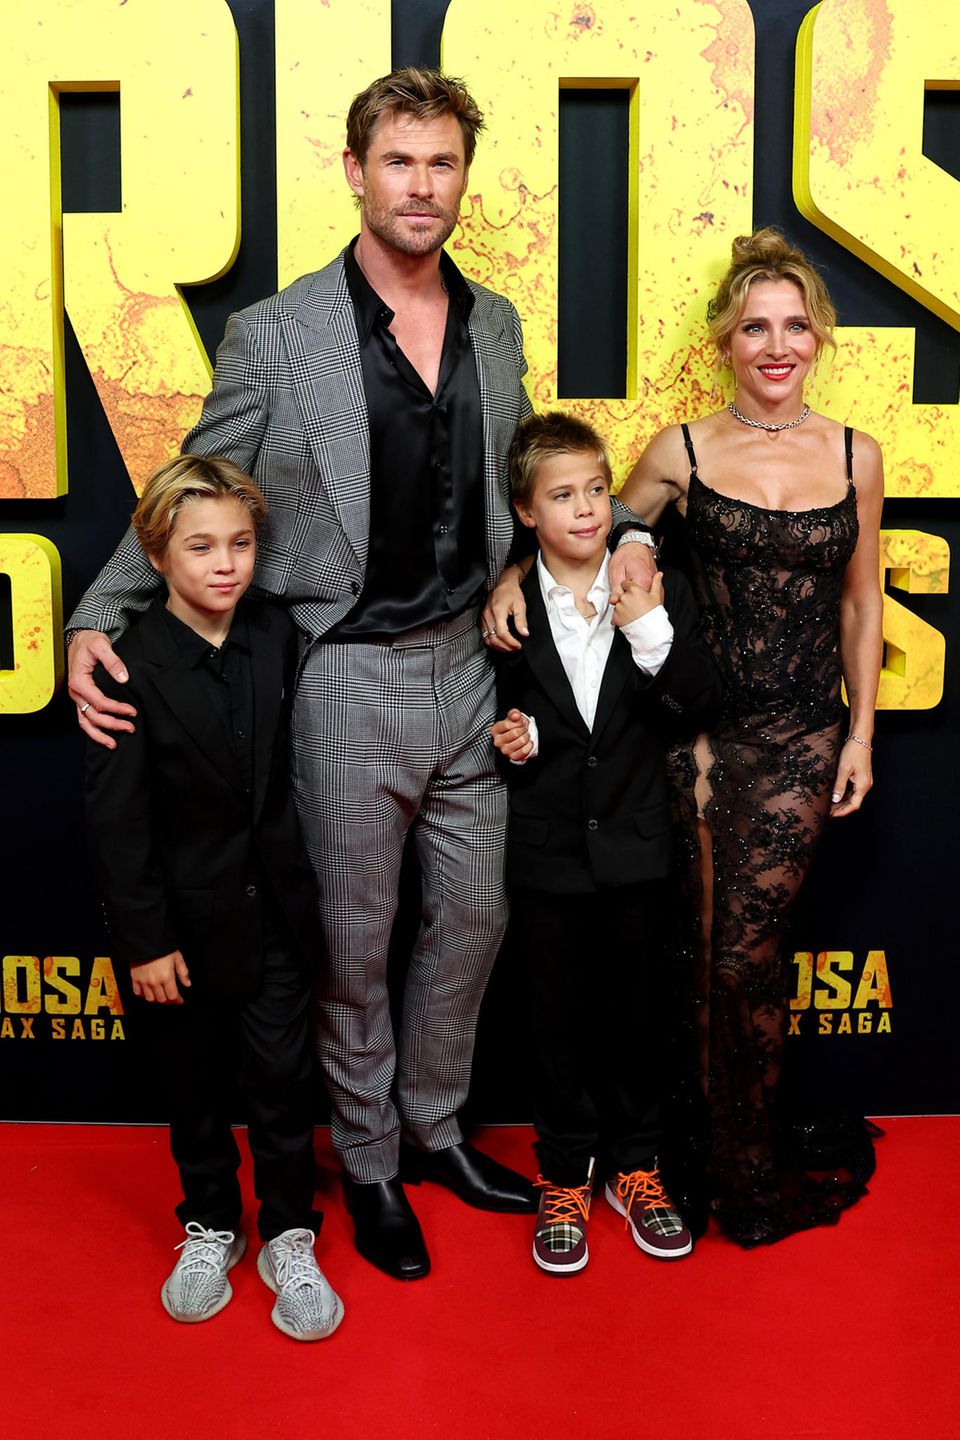 Vip News: Chris Hemsworth und Elsa Pataky besuchen Filmpremiere mit ihren Zwillingen